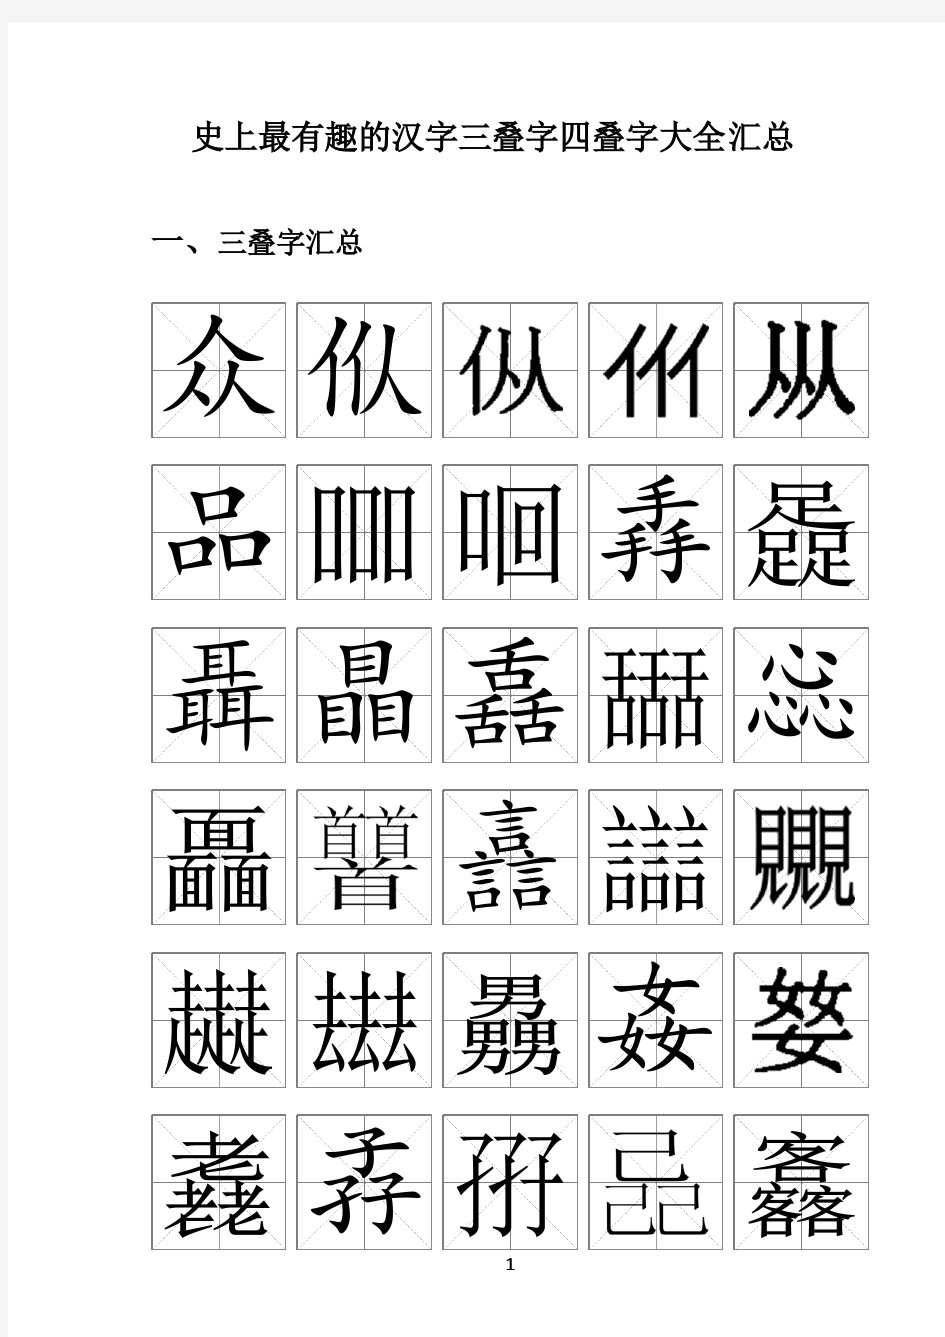 《史上最有趣的汉字三叠字四叠字大全》汇总